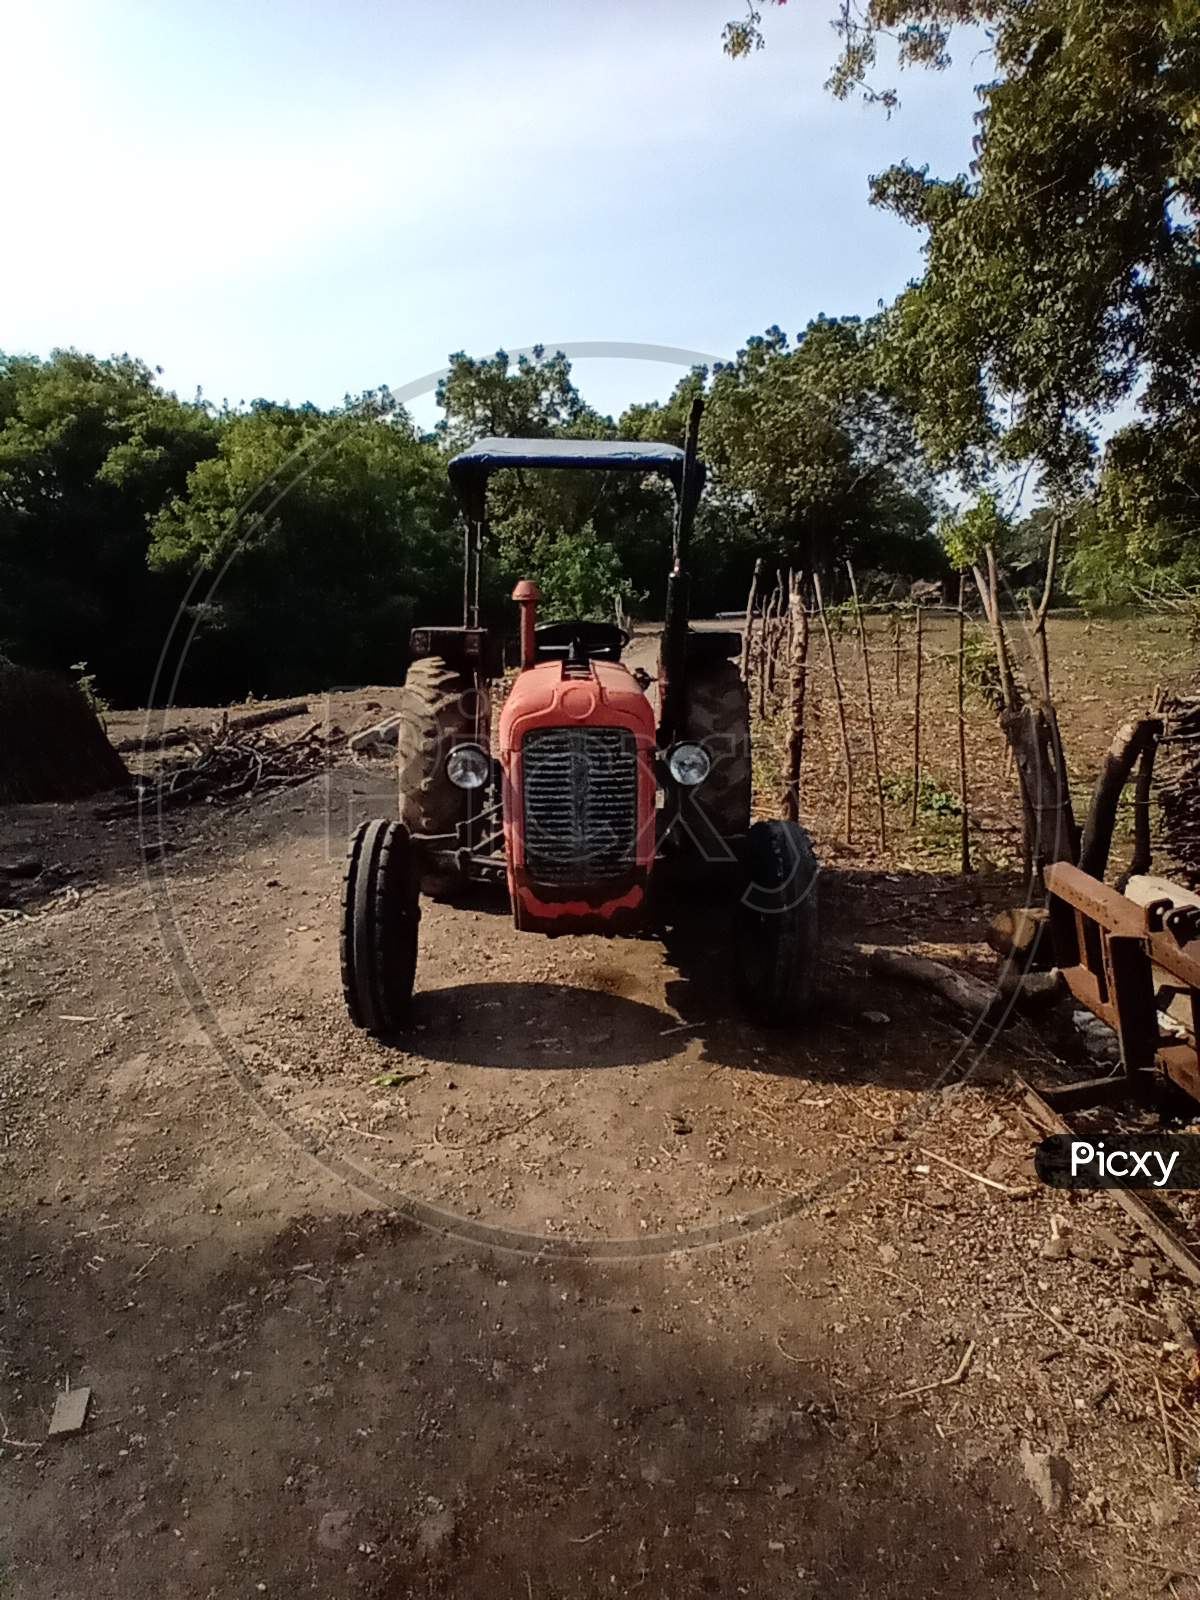 Farmer's tractor